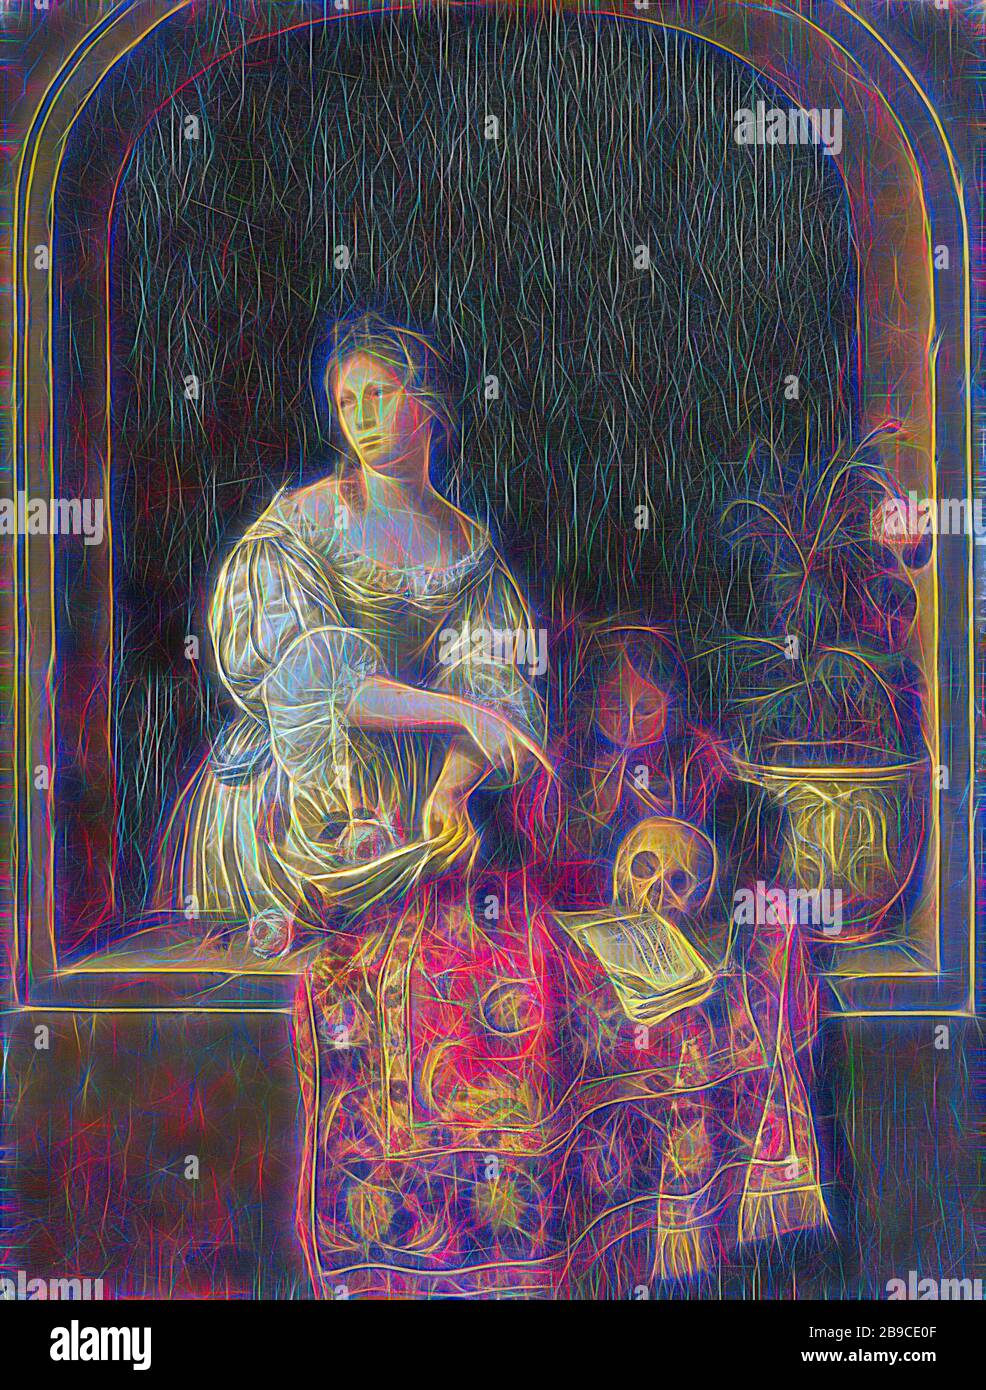 Allegorie der Vergänglichkeit, Allegorie der Vergänglichkeit. Eine junge Frau, die in einem Fenster steht, zeigt auf einen Schädel und ein Musikbuch, das auf der Fensterbank auf einem persischen Teppich liegt. Rechts ein Mohn in einem Topf. Die Frau hält Blumen in ihrer Schürze. Hinter der Frau bläst ein Junge Blasen, Willem van Mieris (zugeschrieben), 1670 - 1681, Tafel, Ölfarbe (Farbe), h 36 cm × w 28 cm d 7,4 cm, von Gibon neu erdacht, Entwurf eines warmfröhlichen Lichts von Helligkeit und Lichtstrahlen. Klassische Kunst mit moderner Note neu erfunden. Fotografie, inspiriert von Futurismus, die dynamische Energie moderner Technologie umfasst, mo Stockfoto